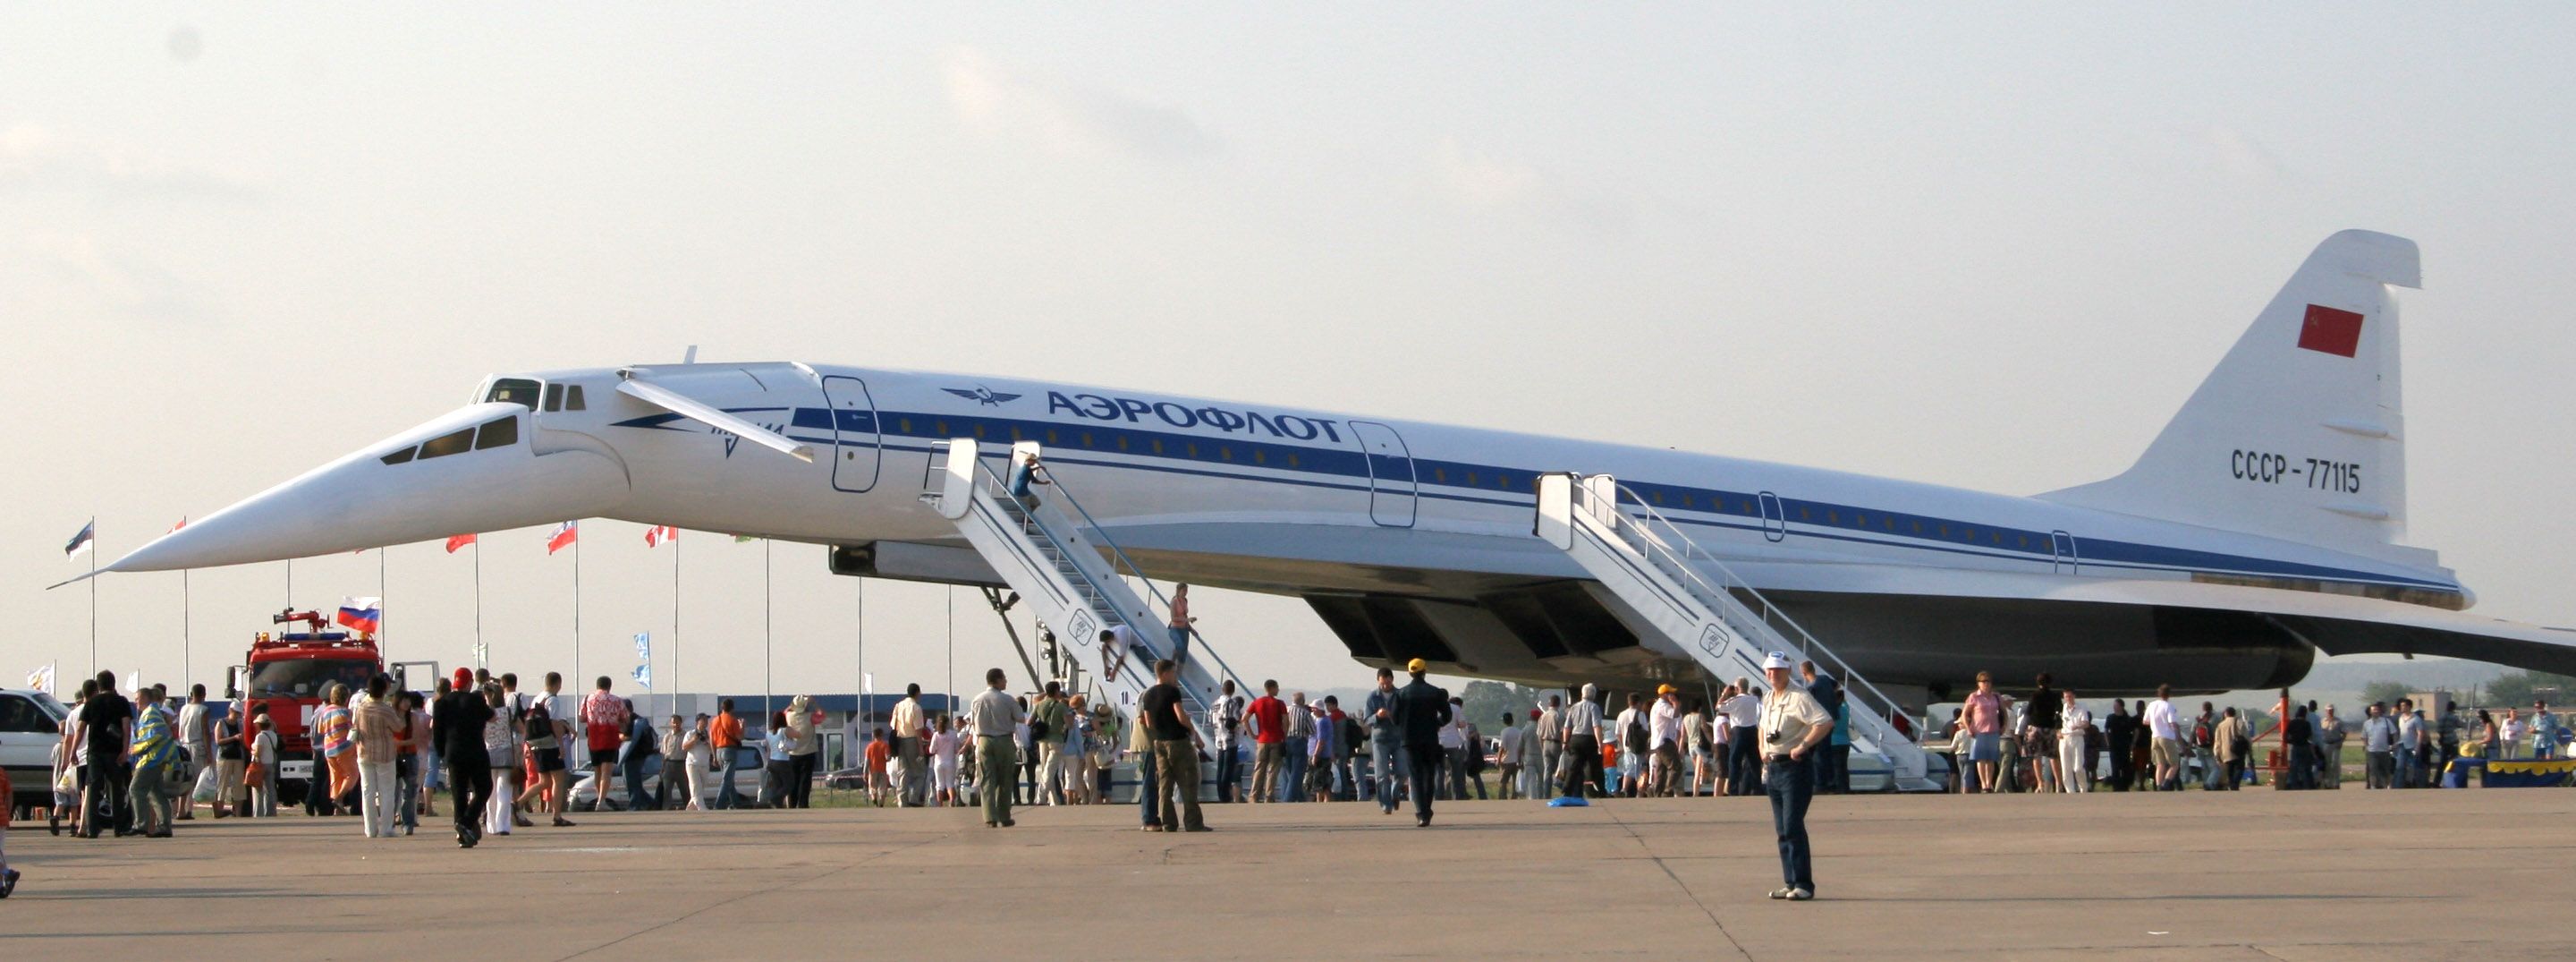 An Aeroflot Tupolev tu-144 on display.